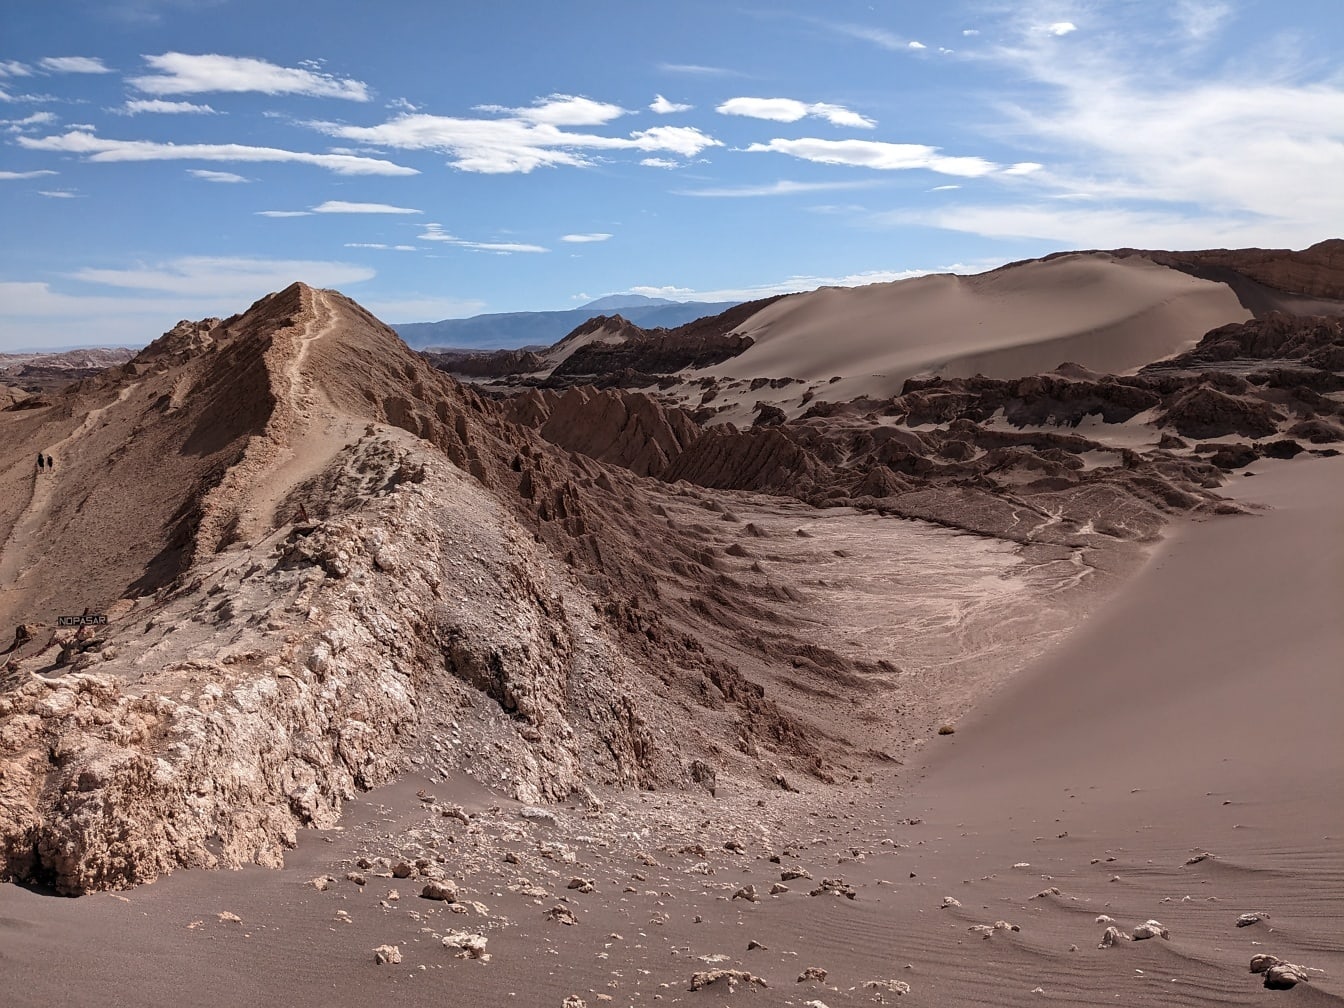 Hiekkaiset kukkulat Atacaman tasangolla autiomaassa maailman kuivin paikka